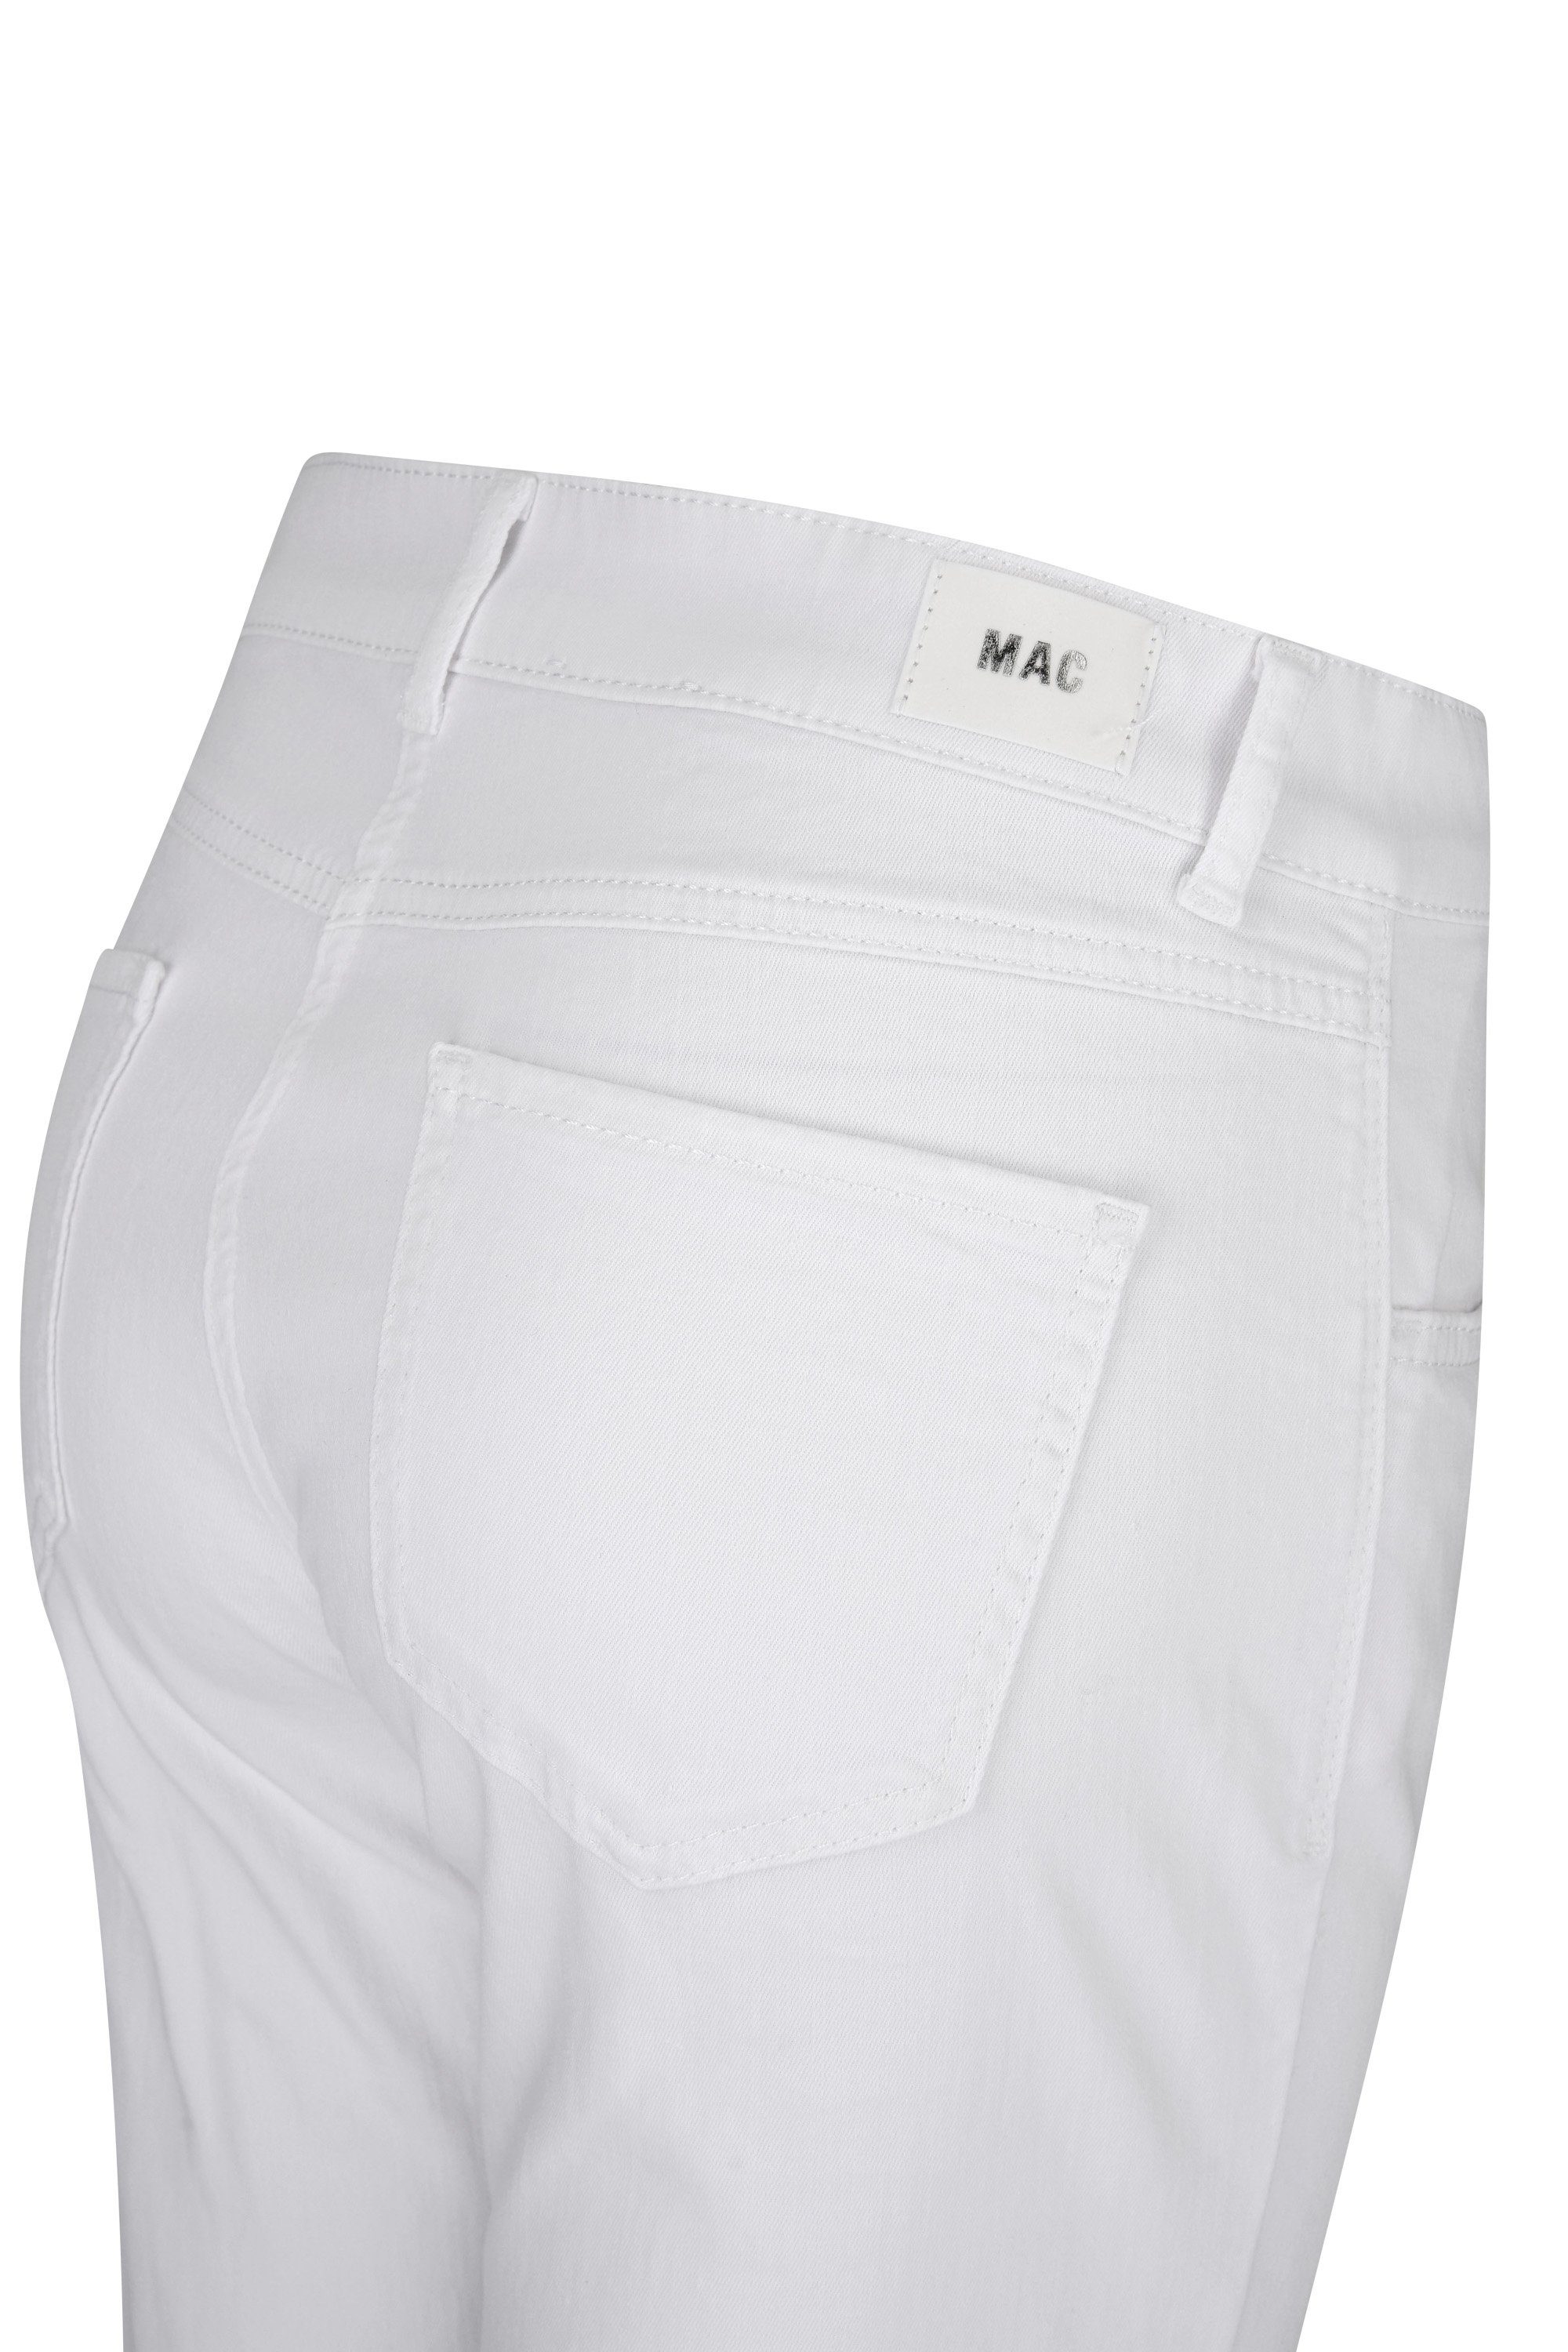 MAC summer clean Stretch-Jeans white 5917-90-0371-D010 MAC CAPRI